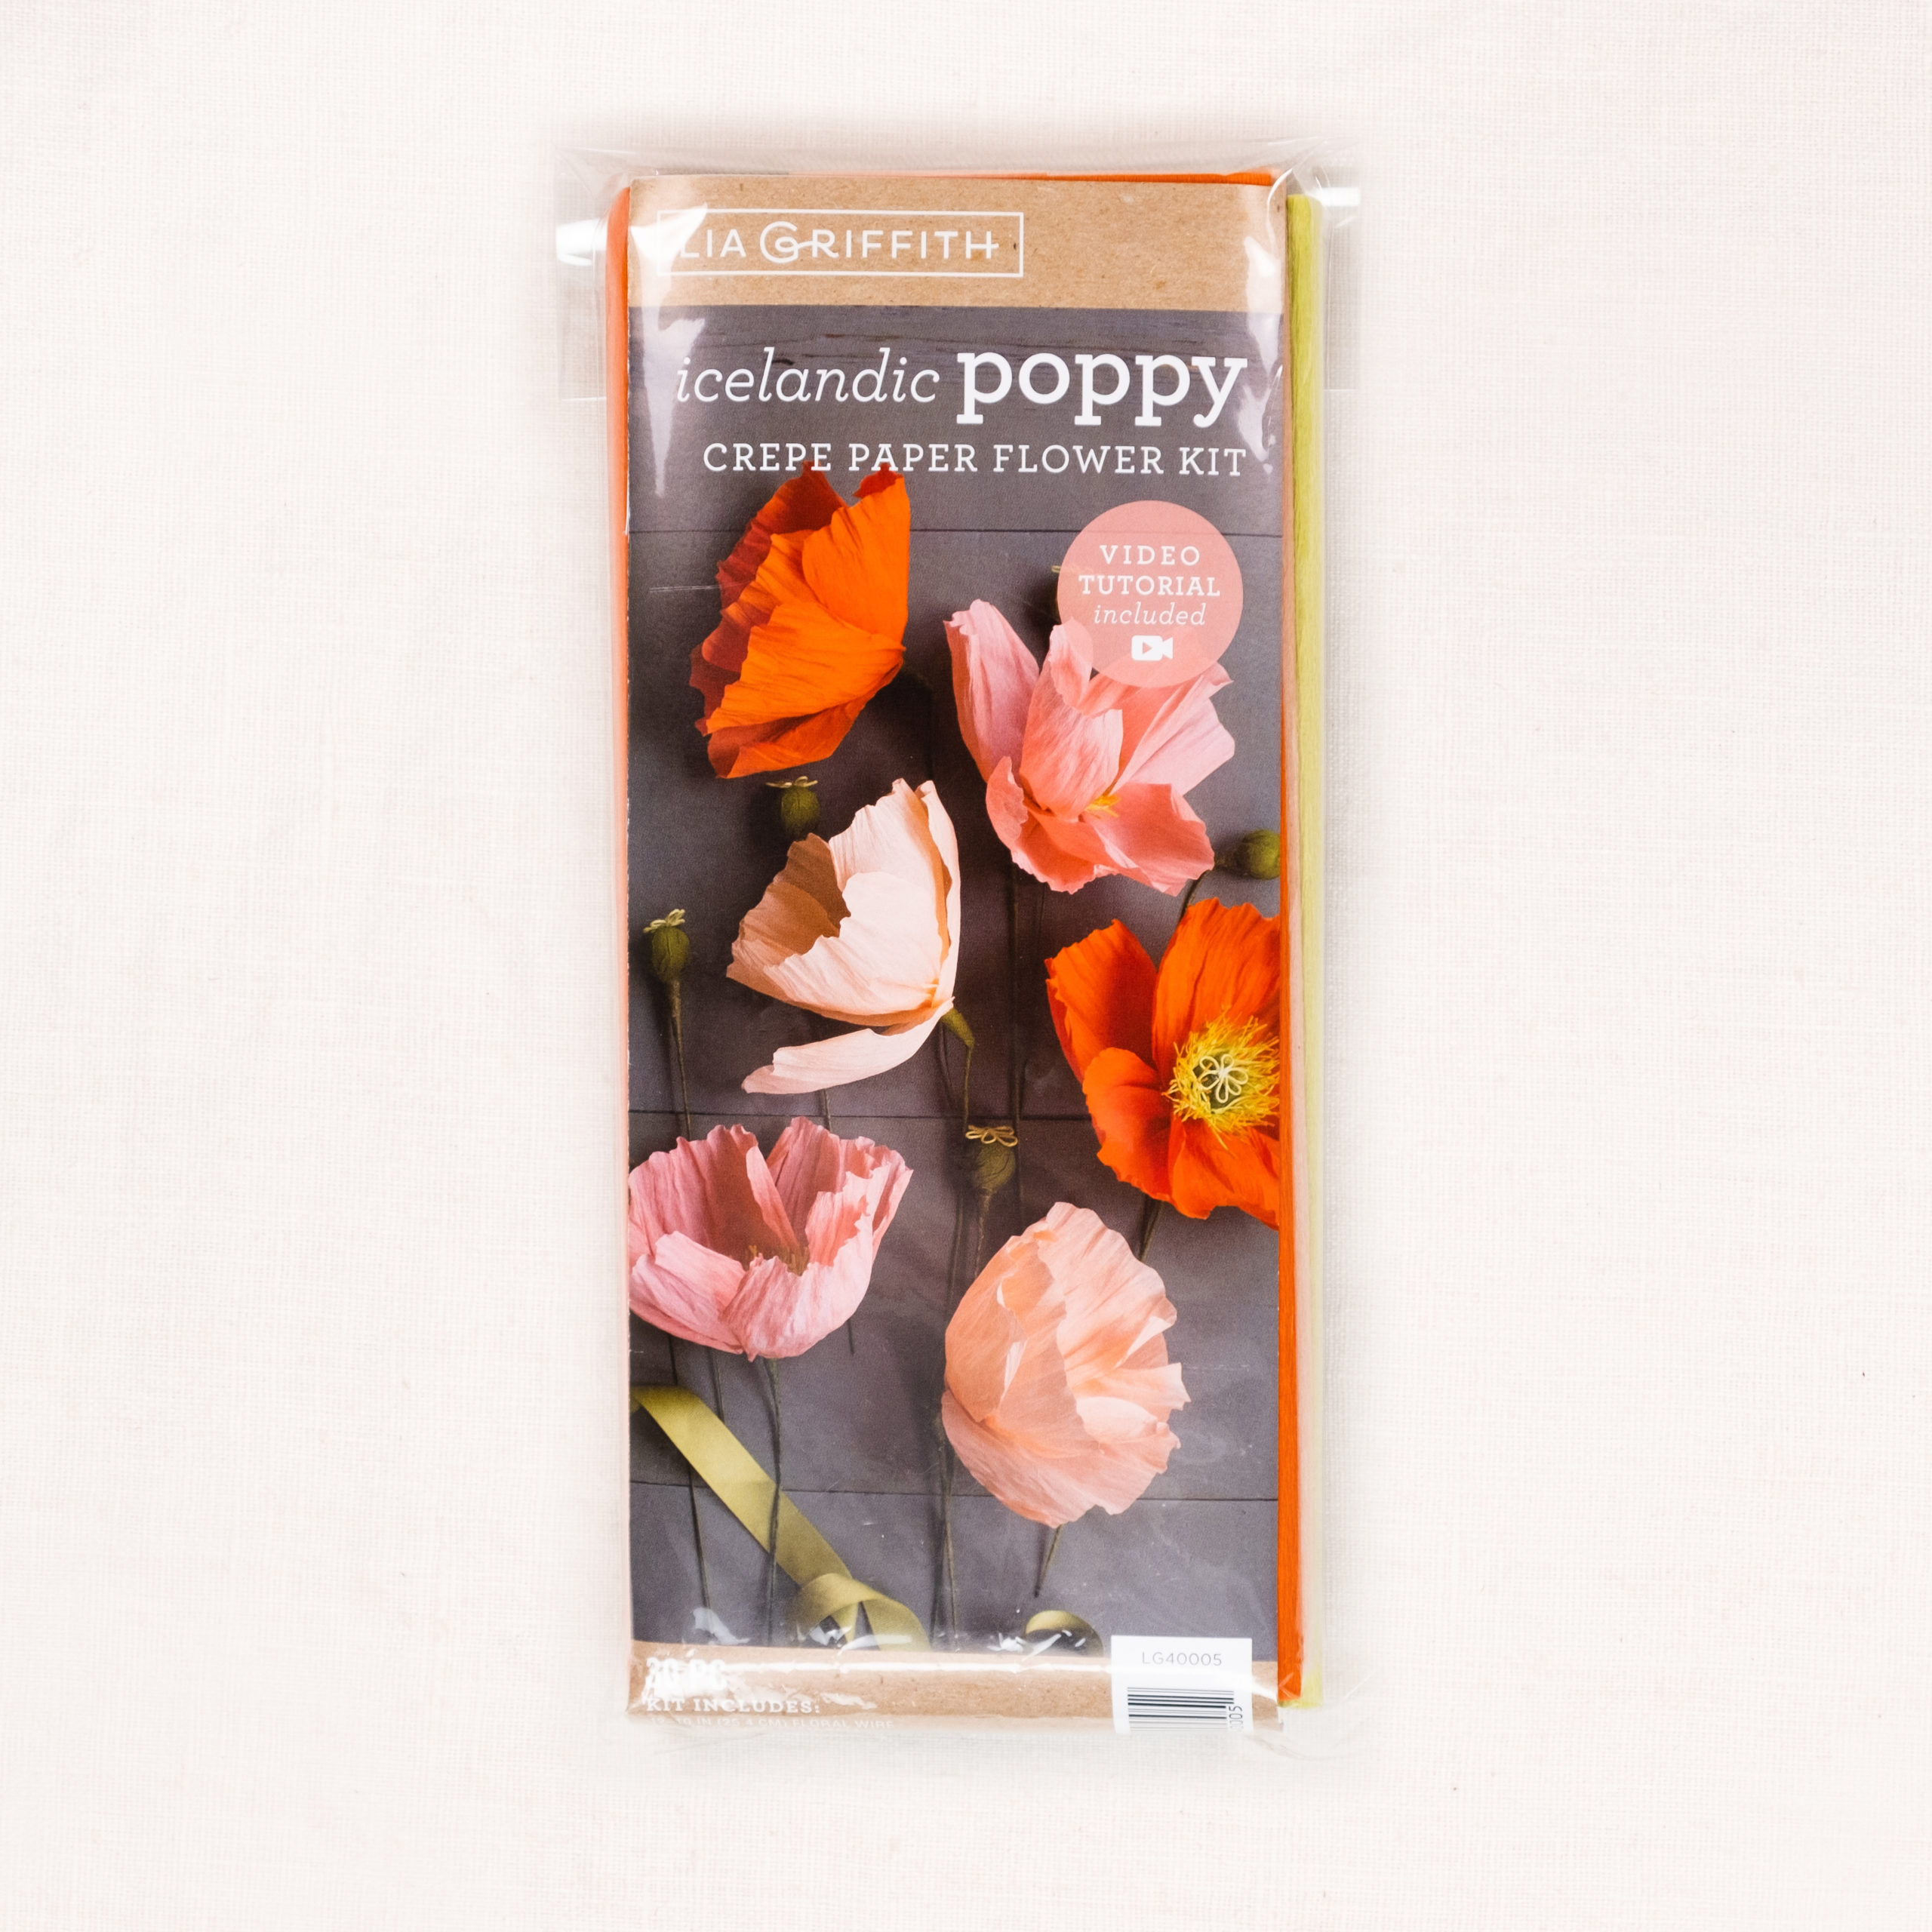 Poppy crepe paper flower kit - Lia Griffith